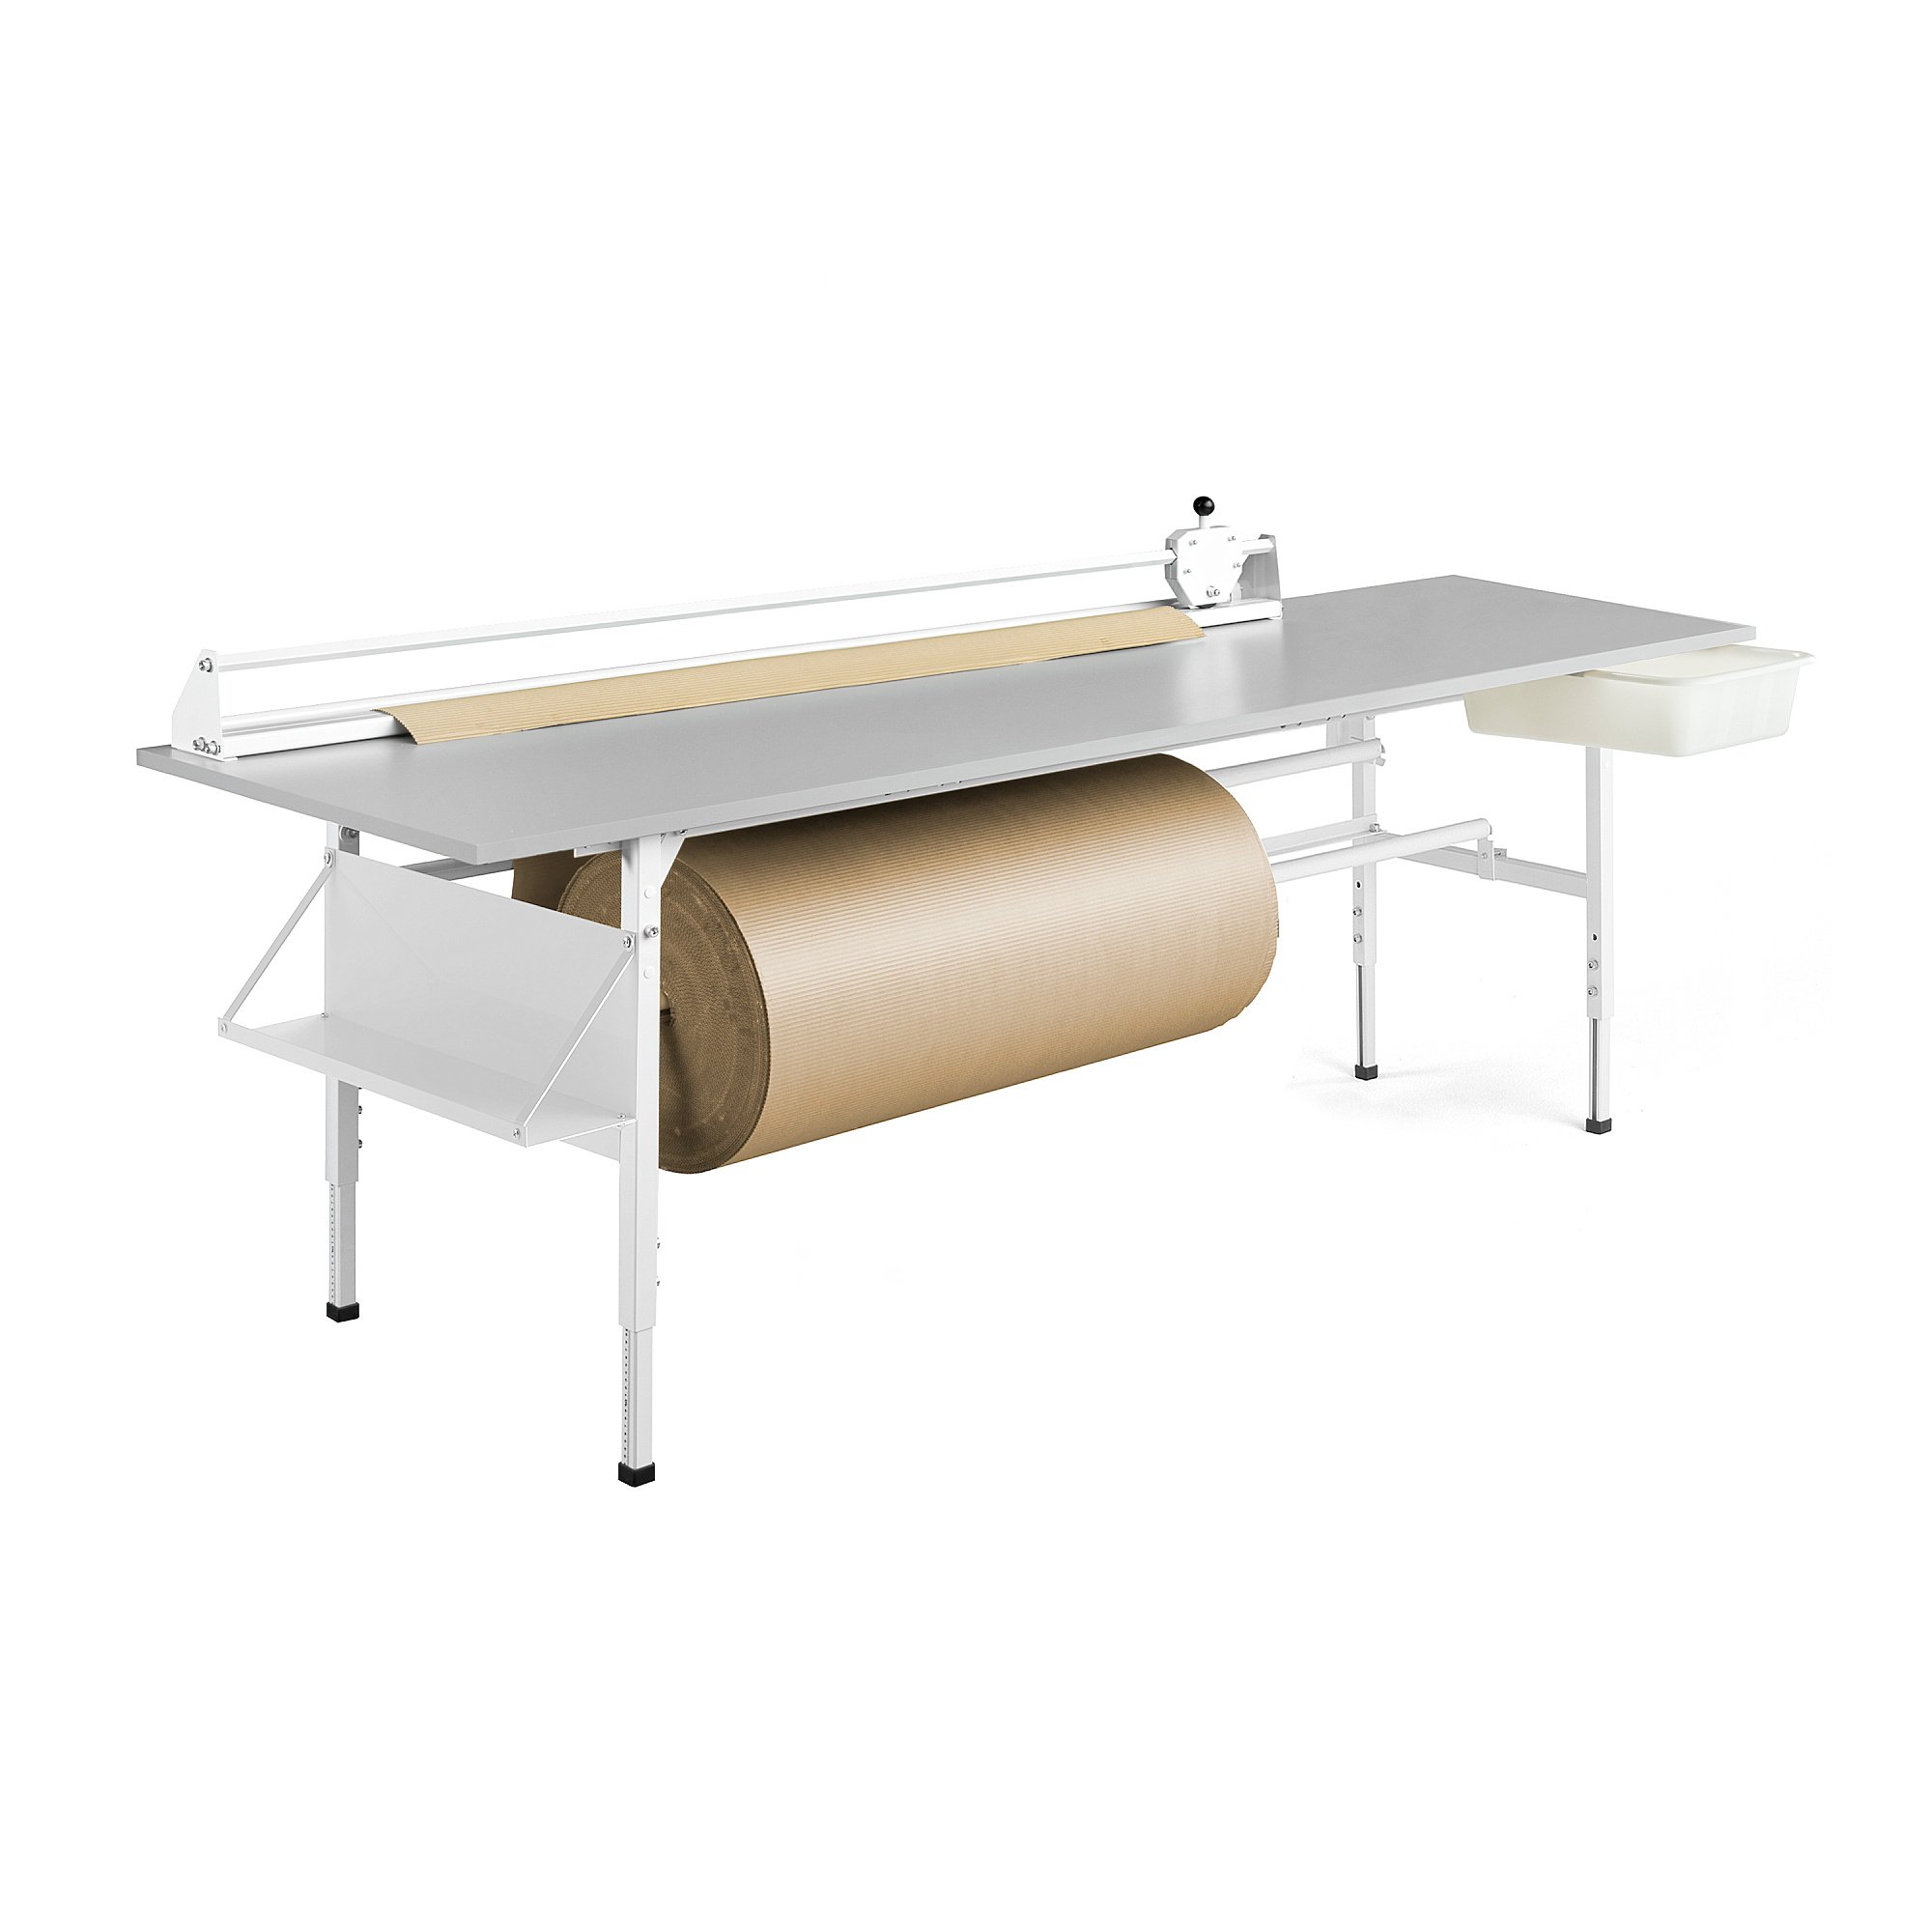 E-shop Dielenský baliaci stôl SEND, 2400x800 mm, šedý